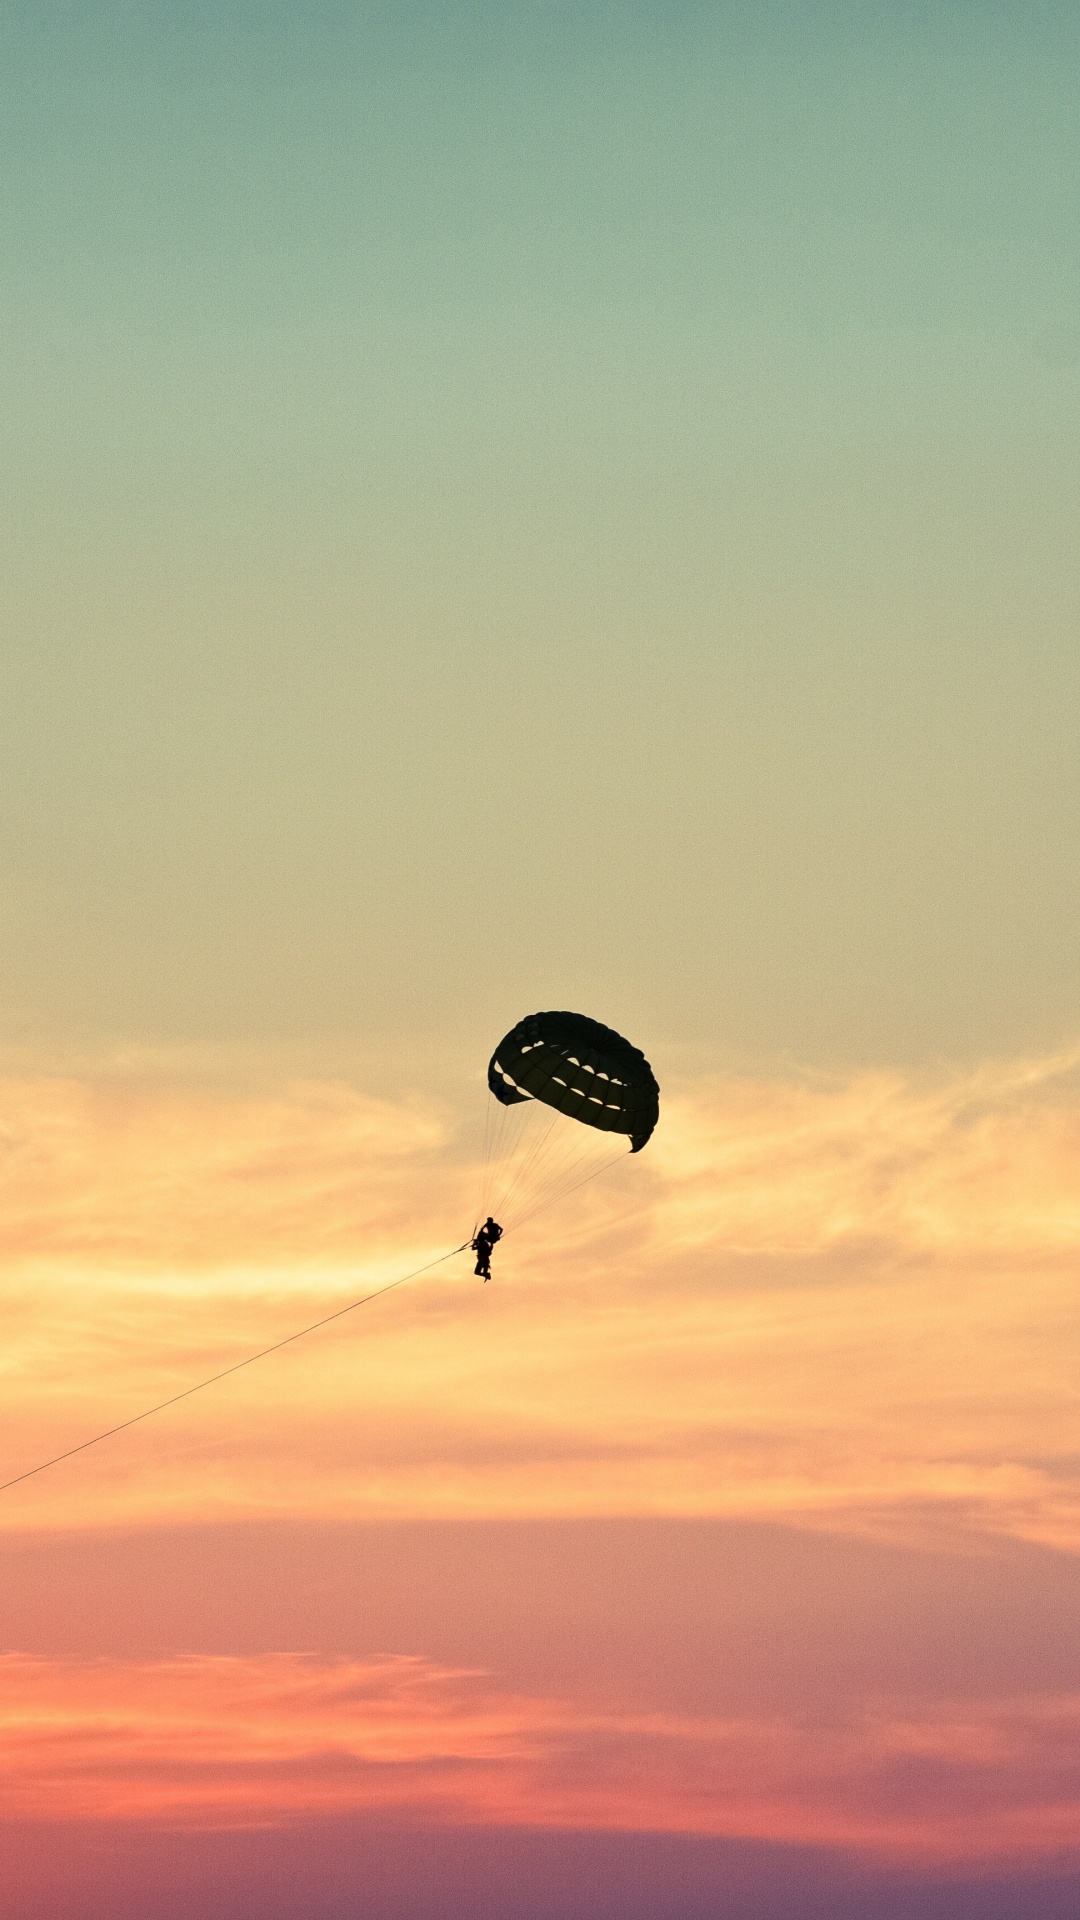 降落伞, 空中运动, 极限运动, 地平线, 伞兵 壁纸 1080x1920 允许